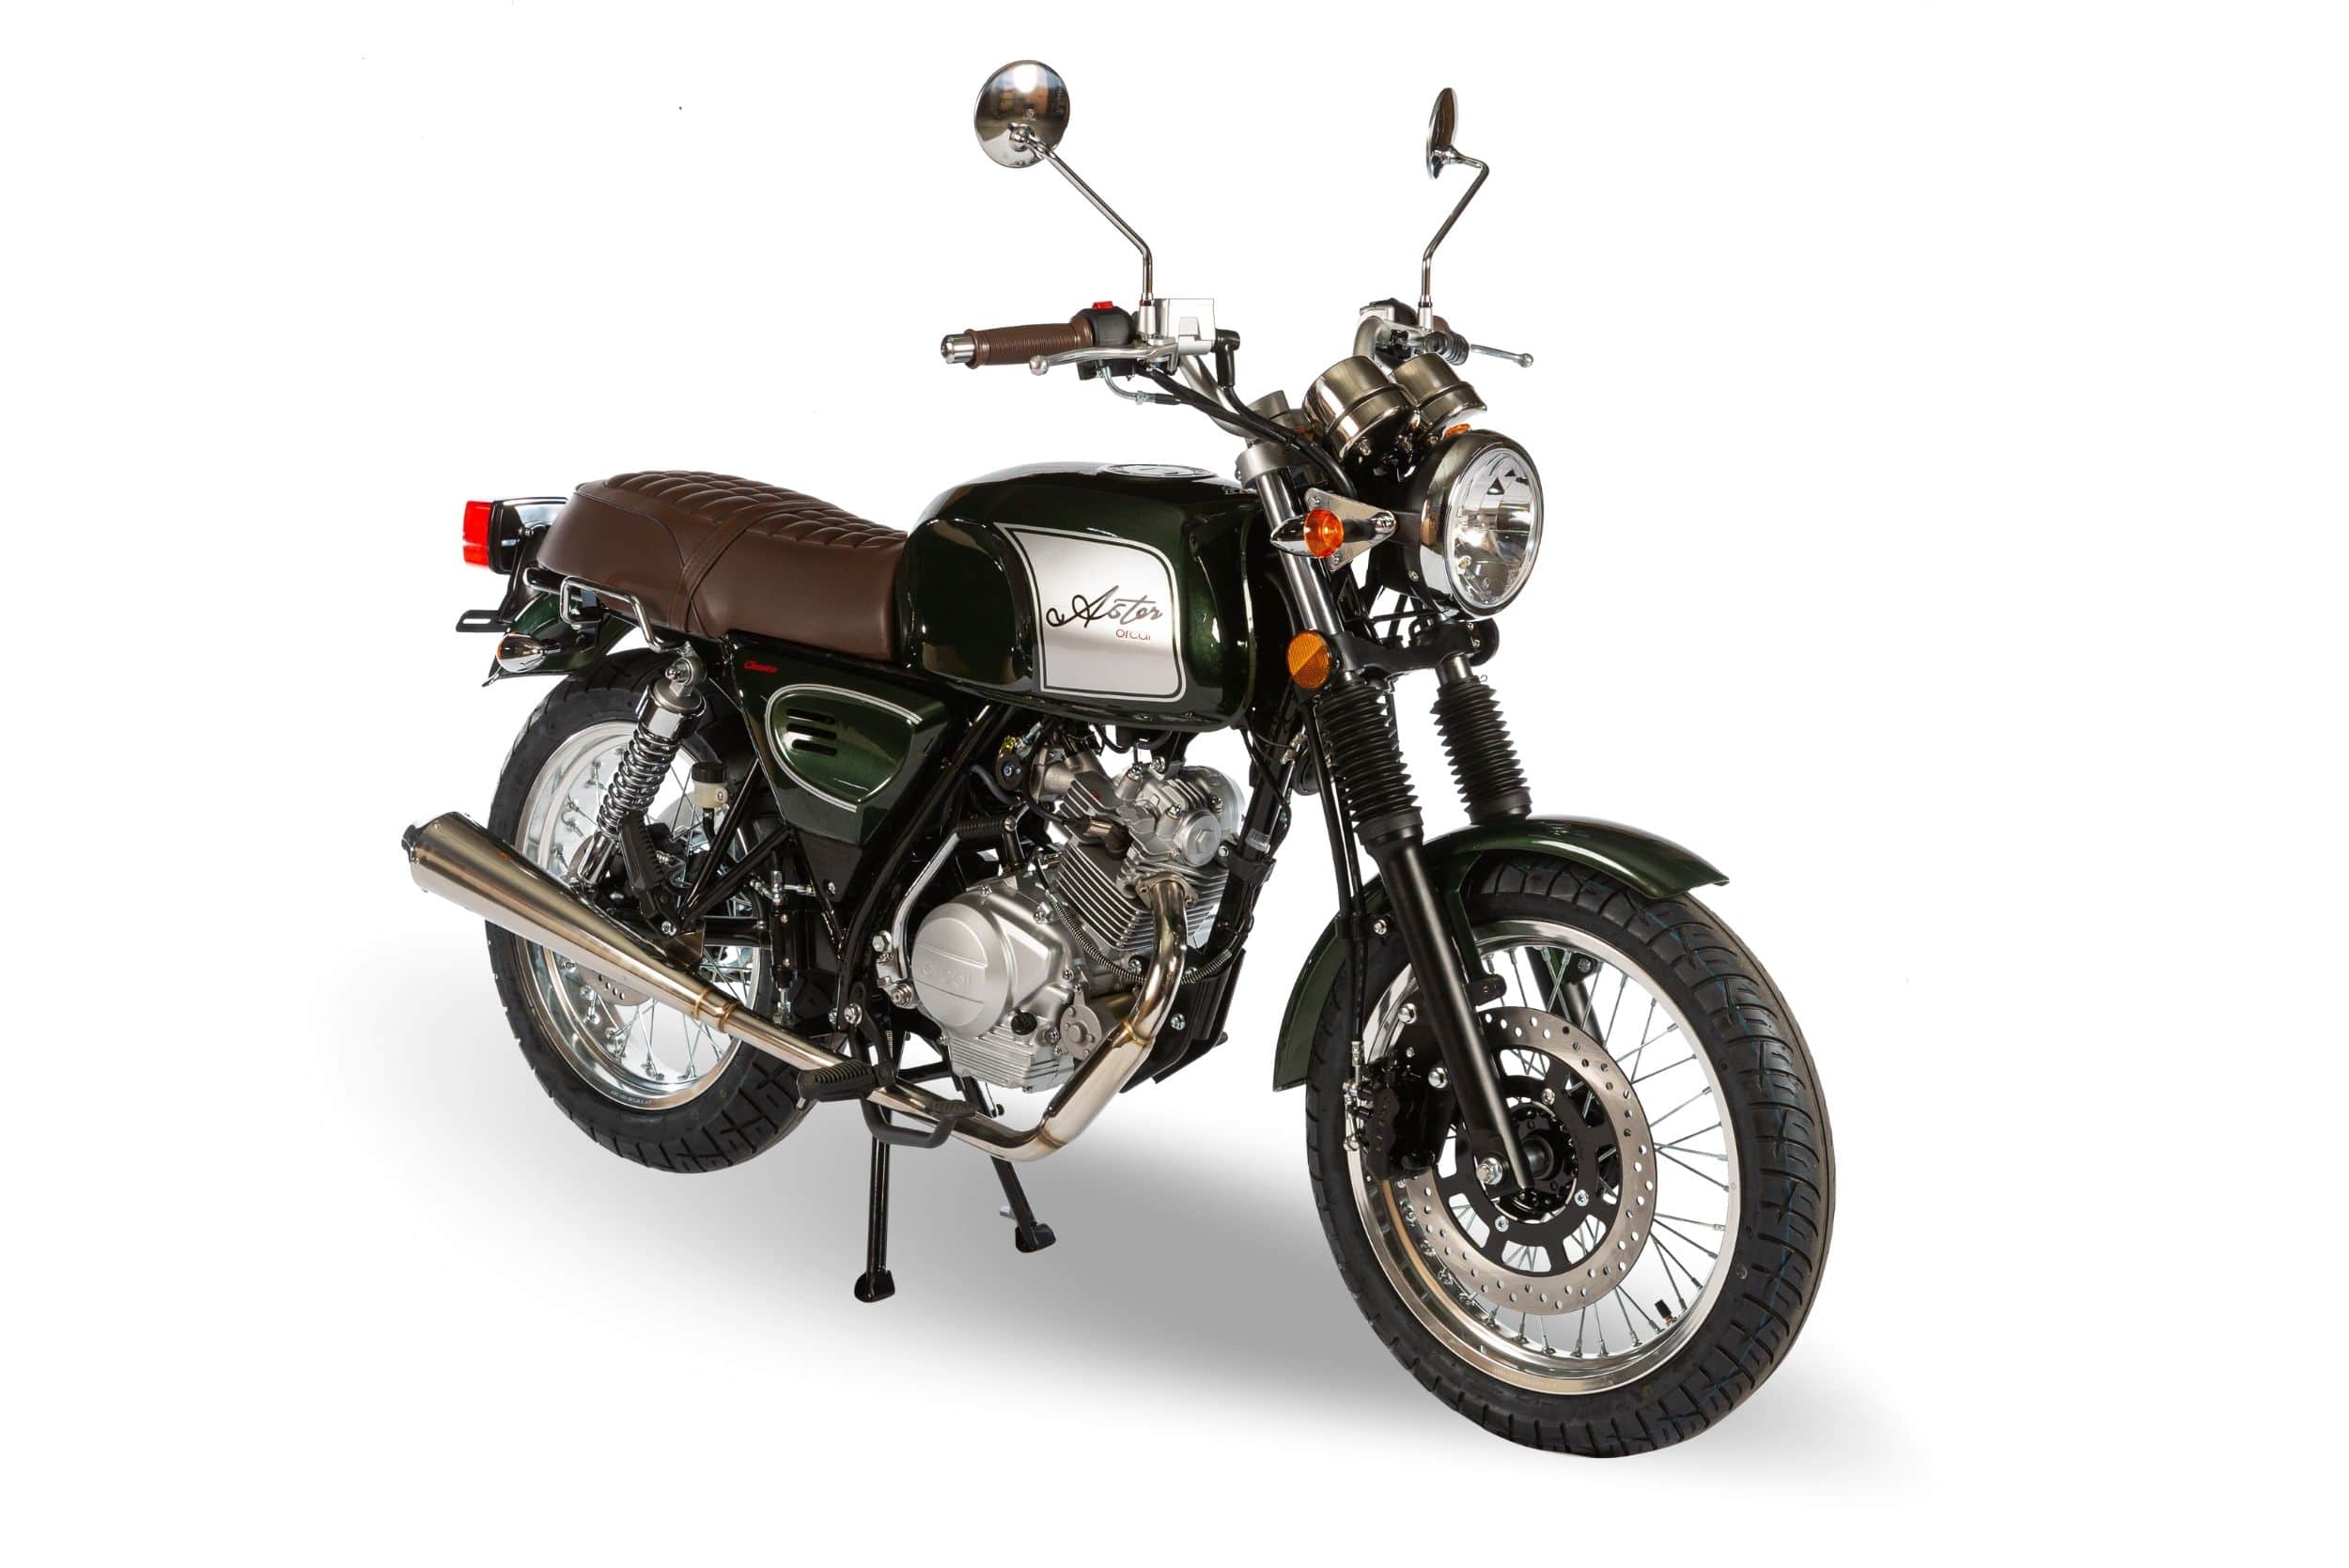 Astor moto 125cc neo-retro - Orcal